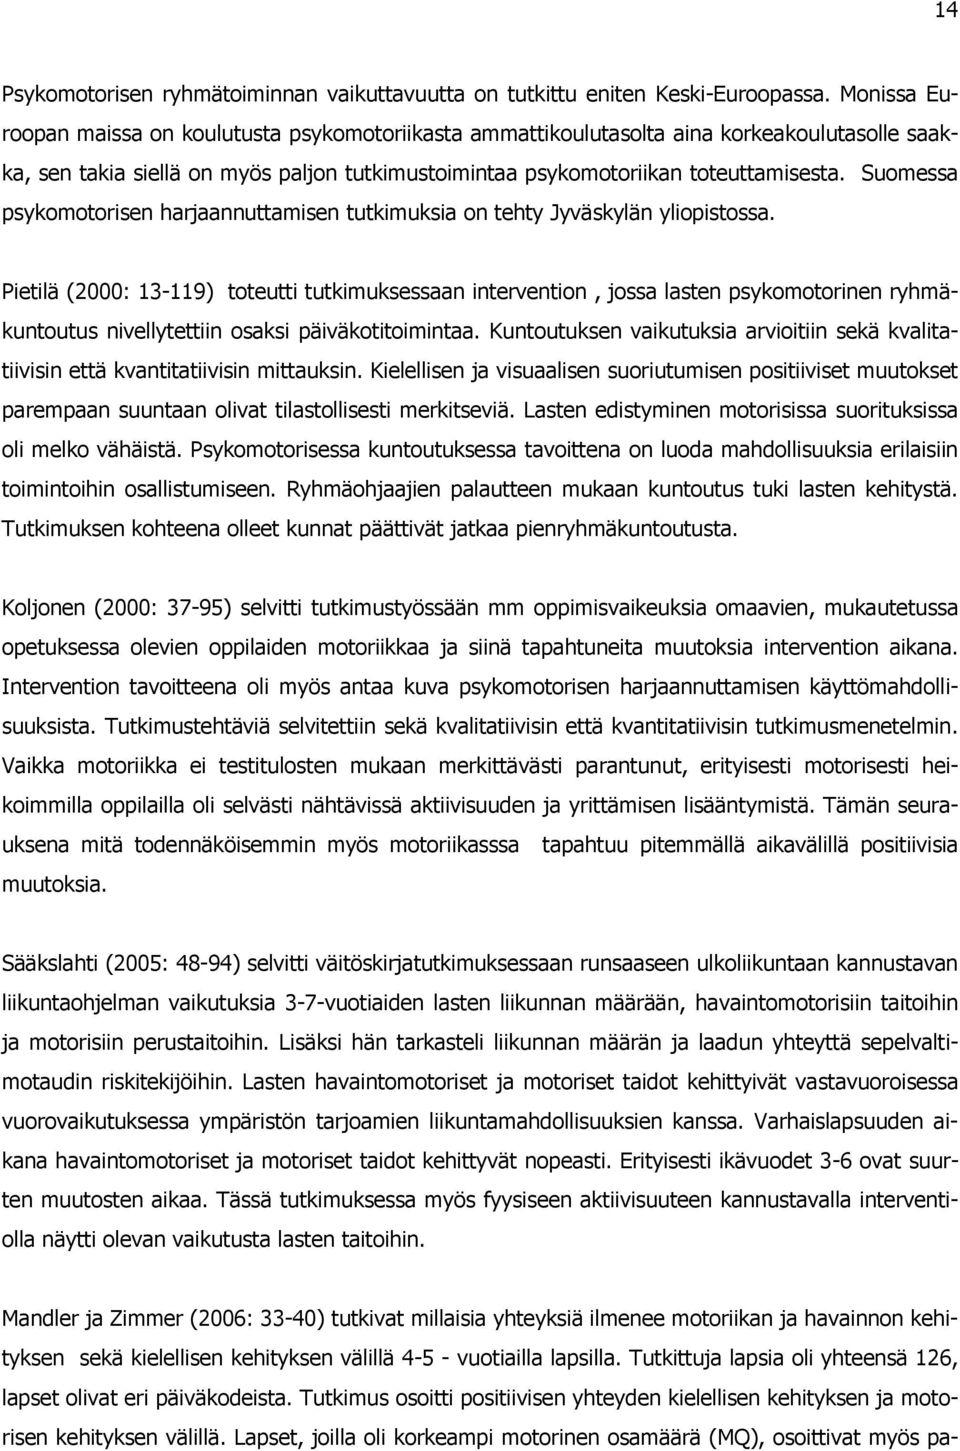 Sumessa psykmtrisen harjaannuttamisen tutkimuksia n tehty Jyväskylän ylipistssa.